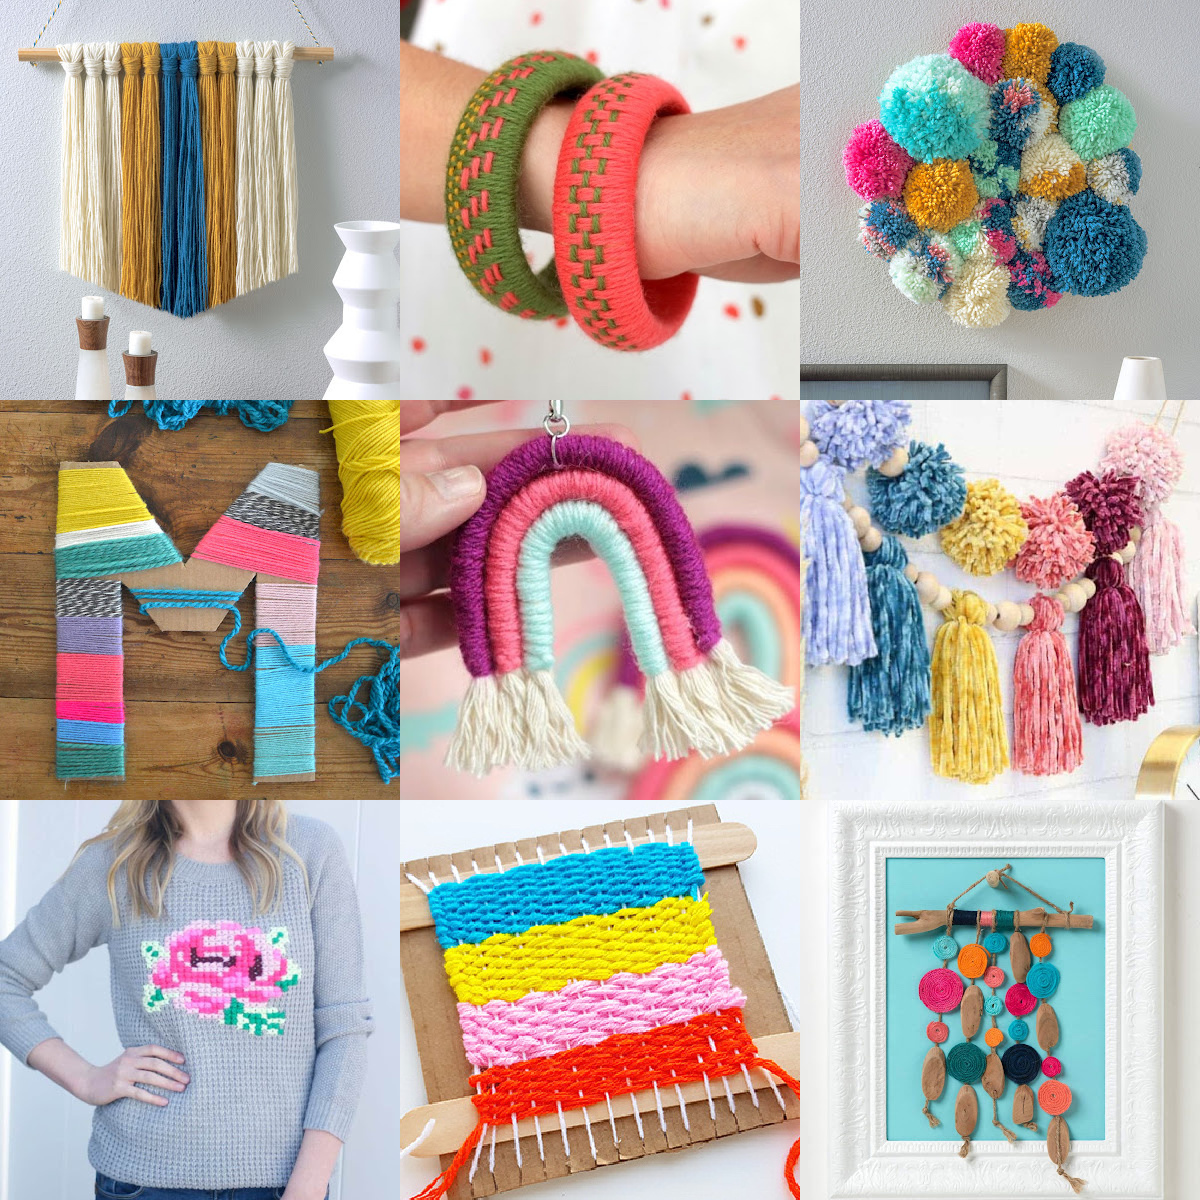 47 Outstanding Yarn Craft Ideas - FeltMagnet